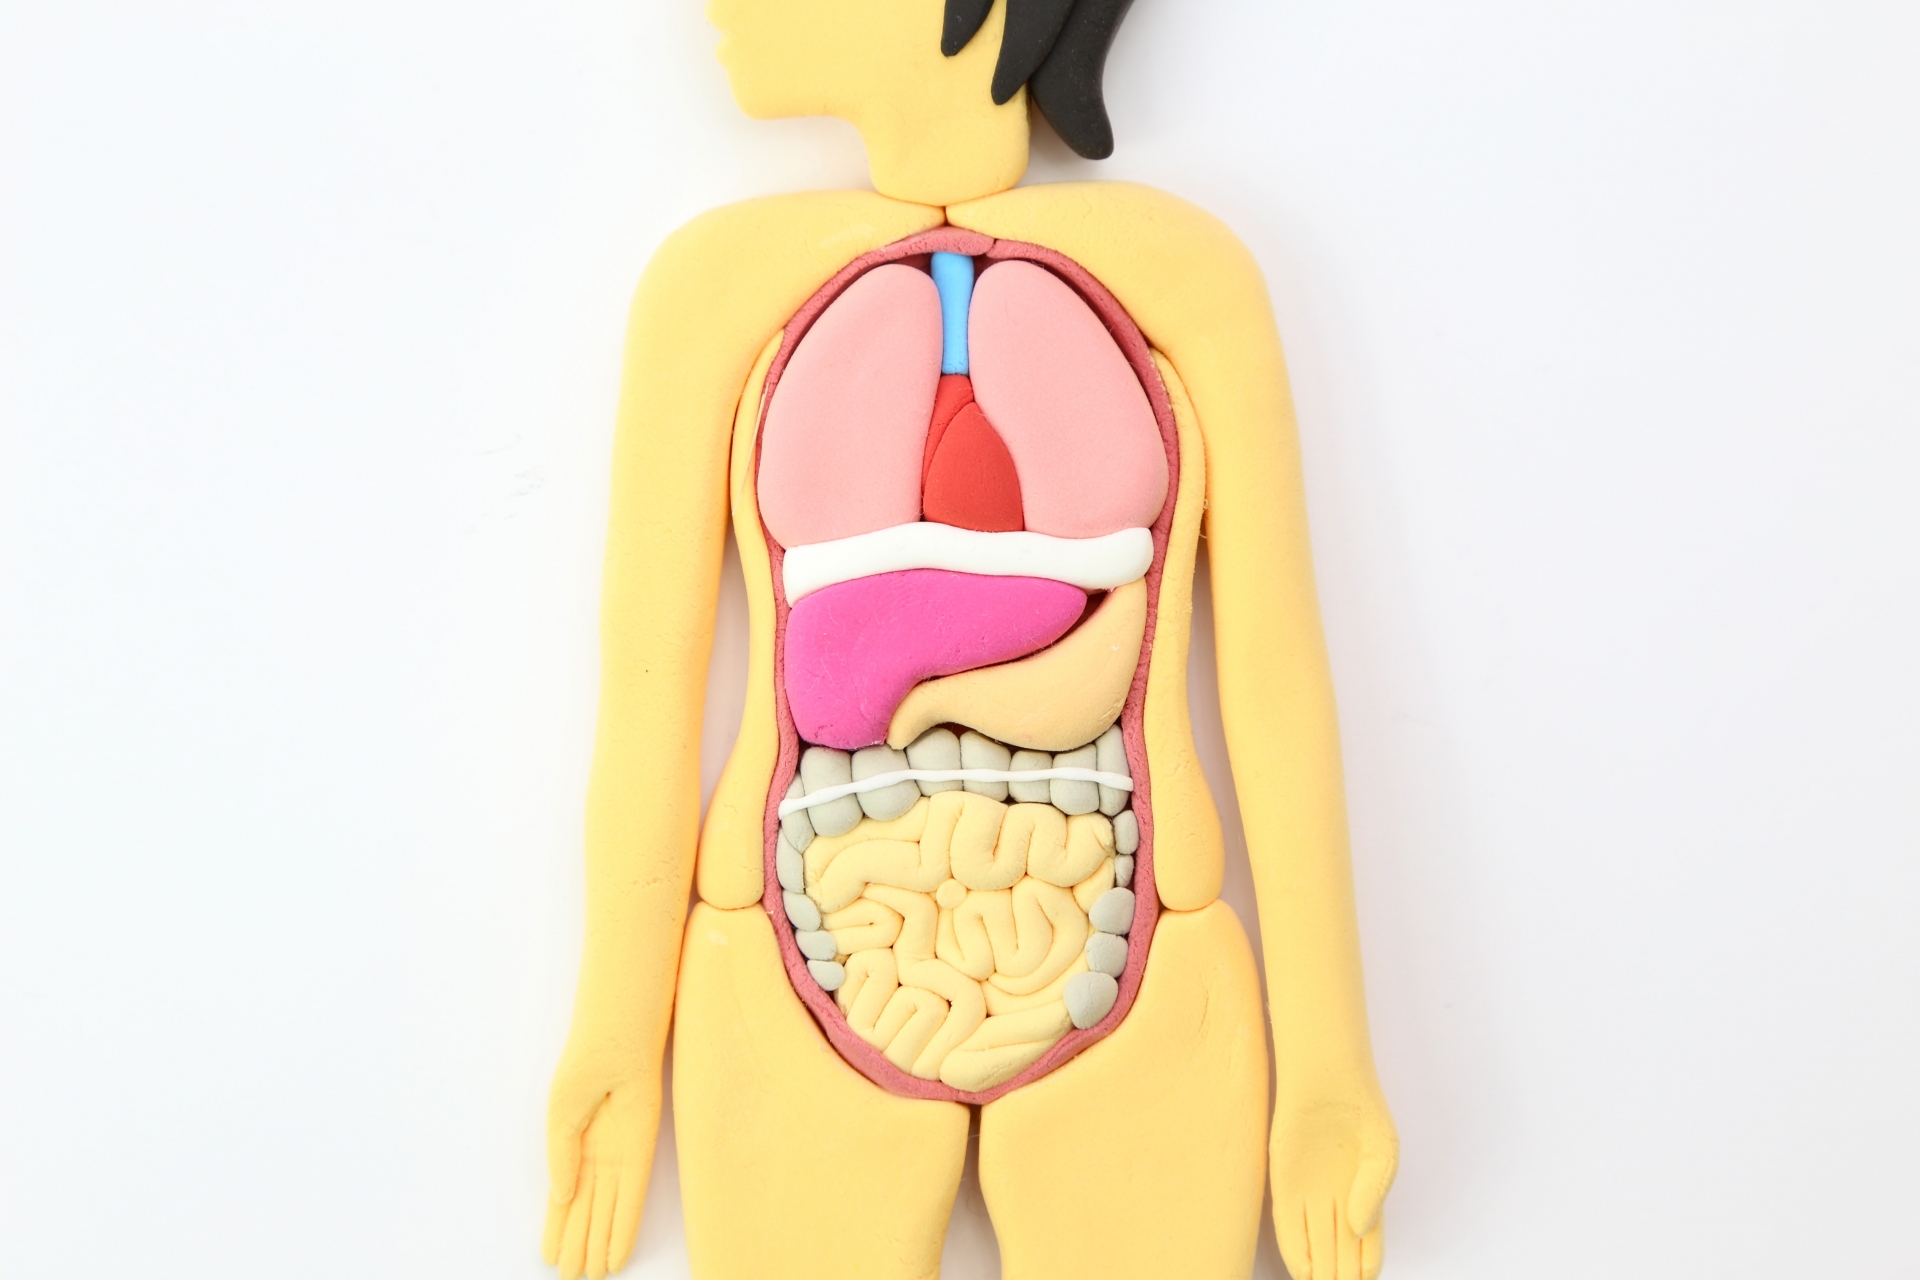 大腸の模型